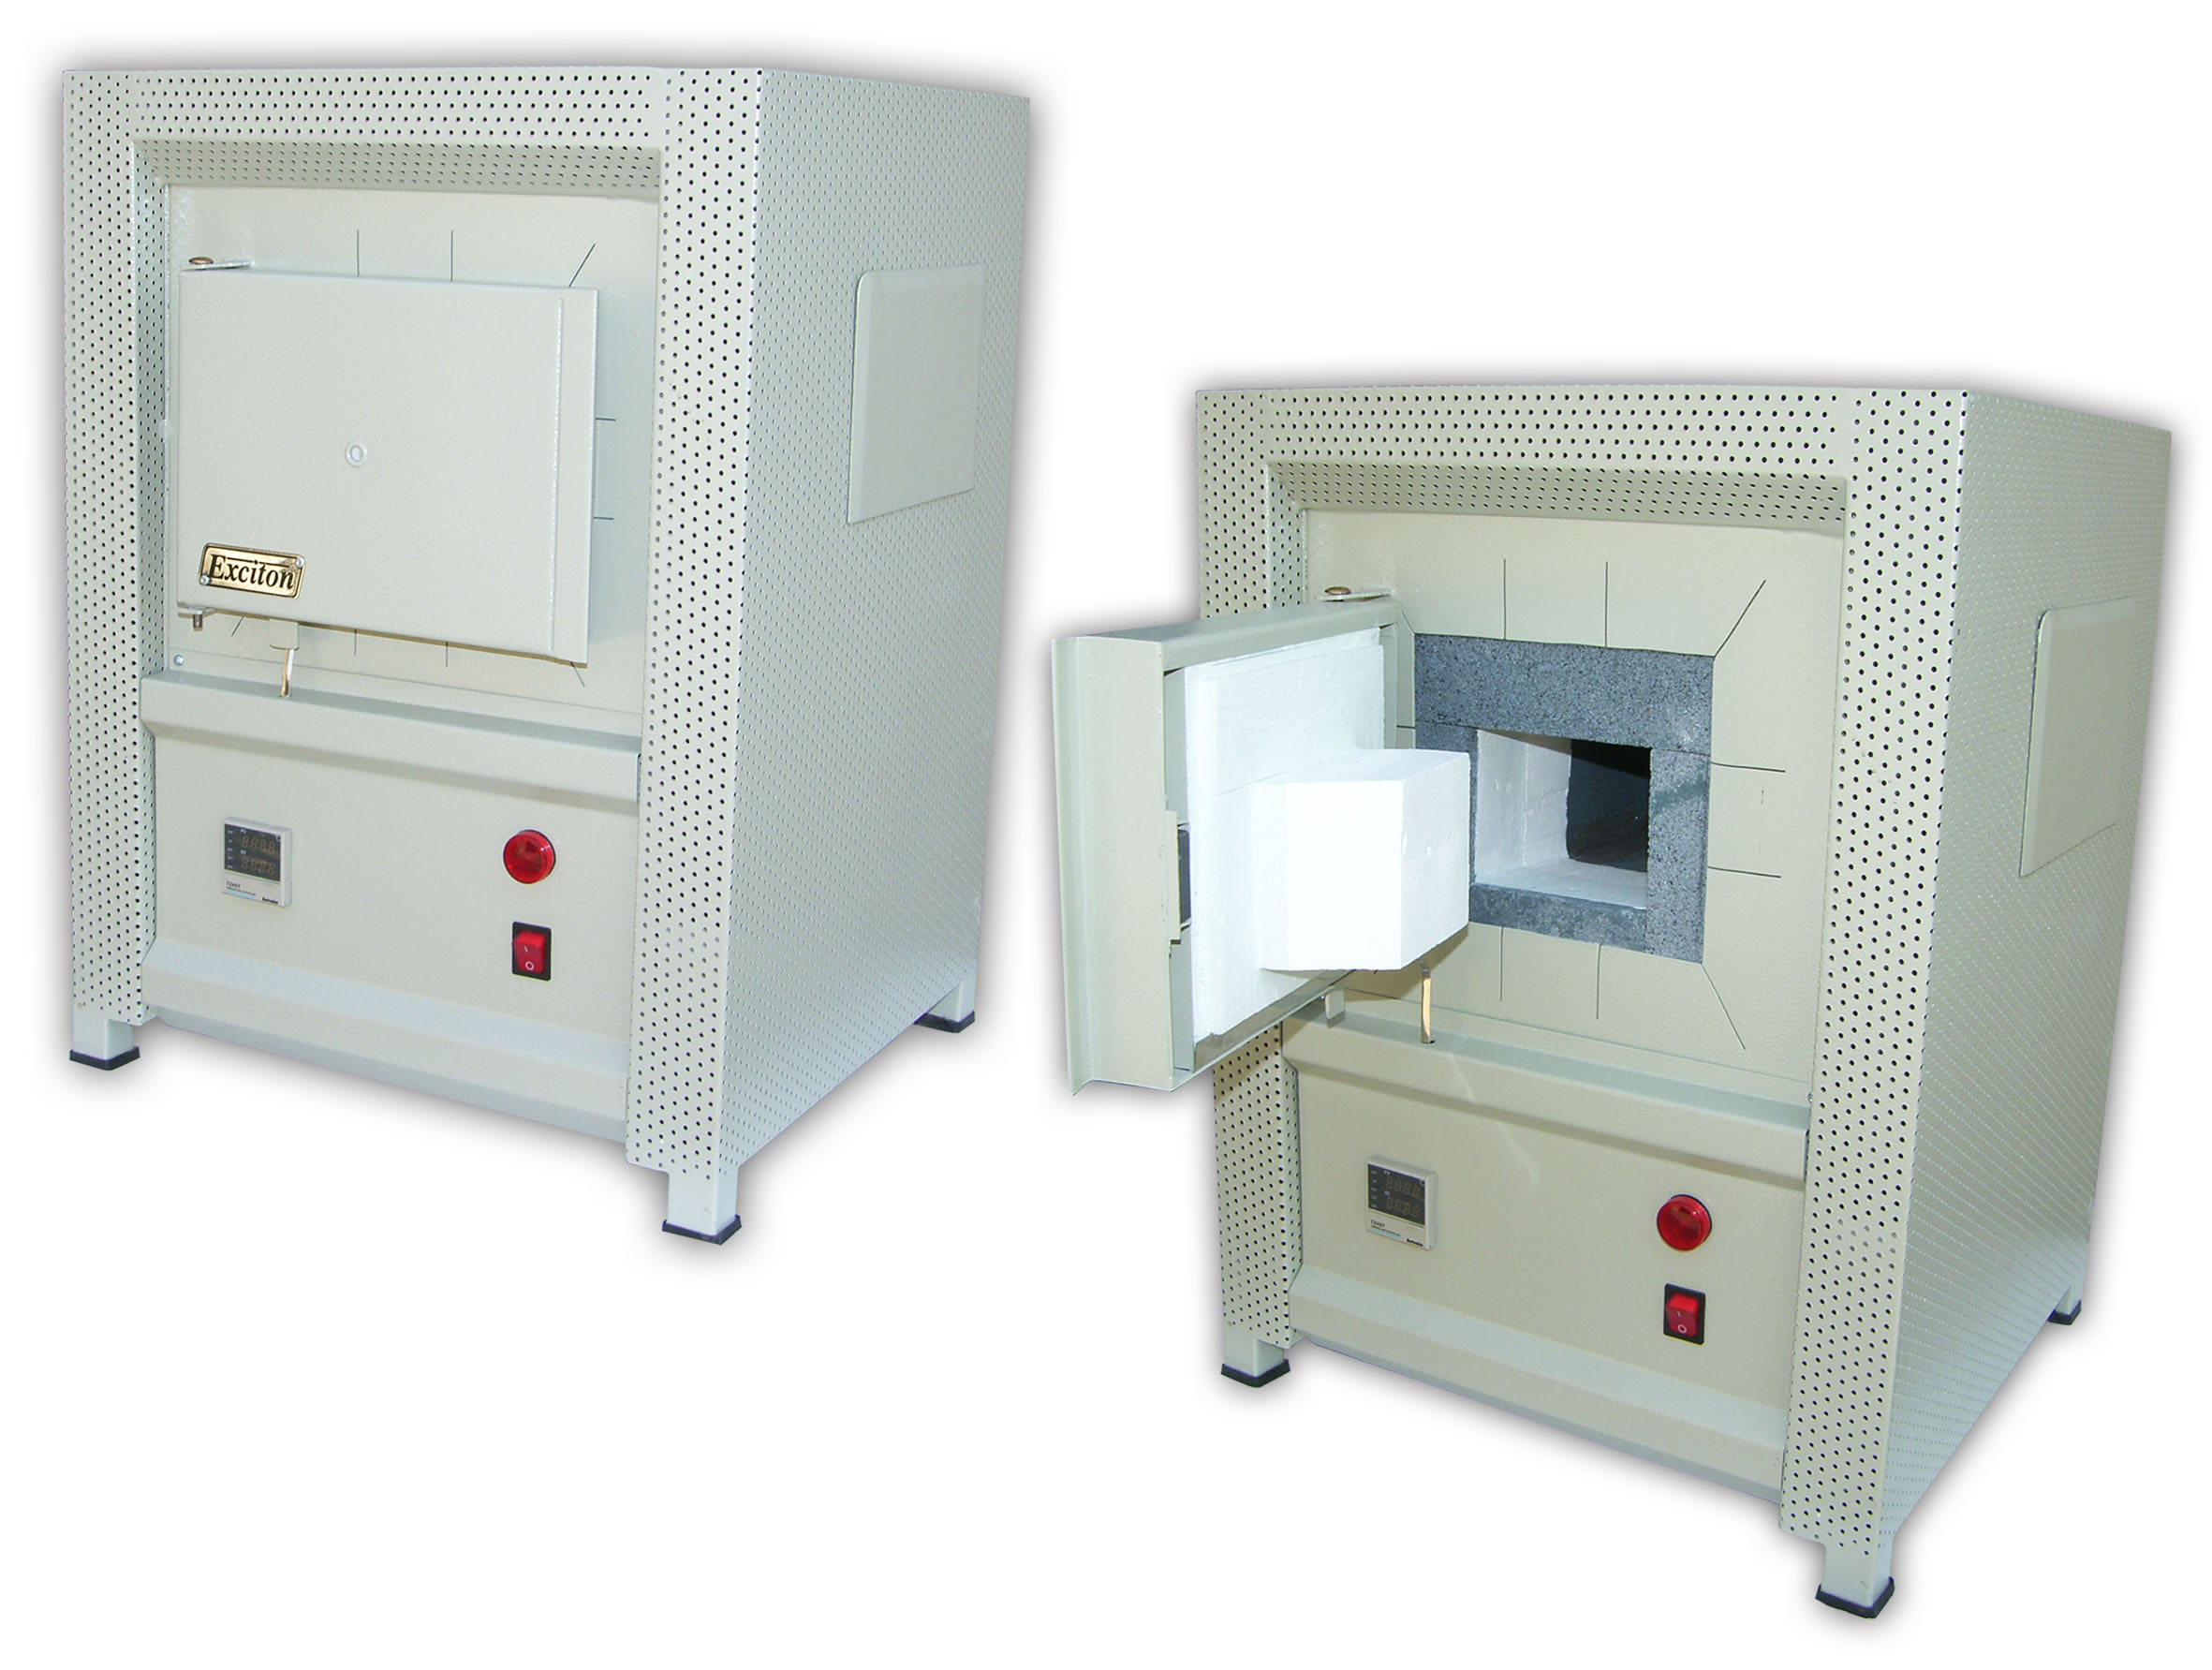 کوره الکتریکی جعبه ای آزمایشگاهی 2 لیتری 1500 درجه با لایه نسوز اول از جنس SiC